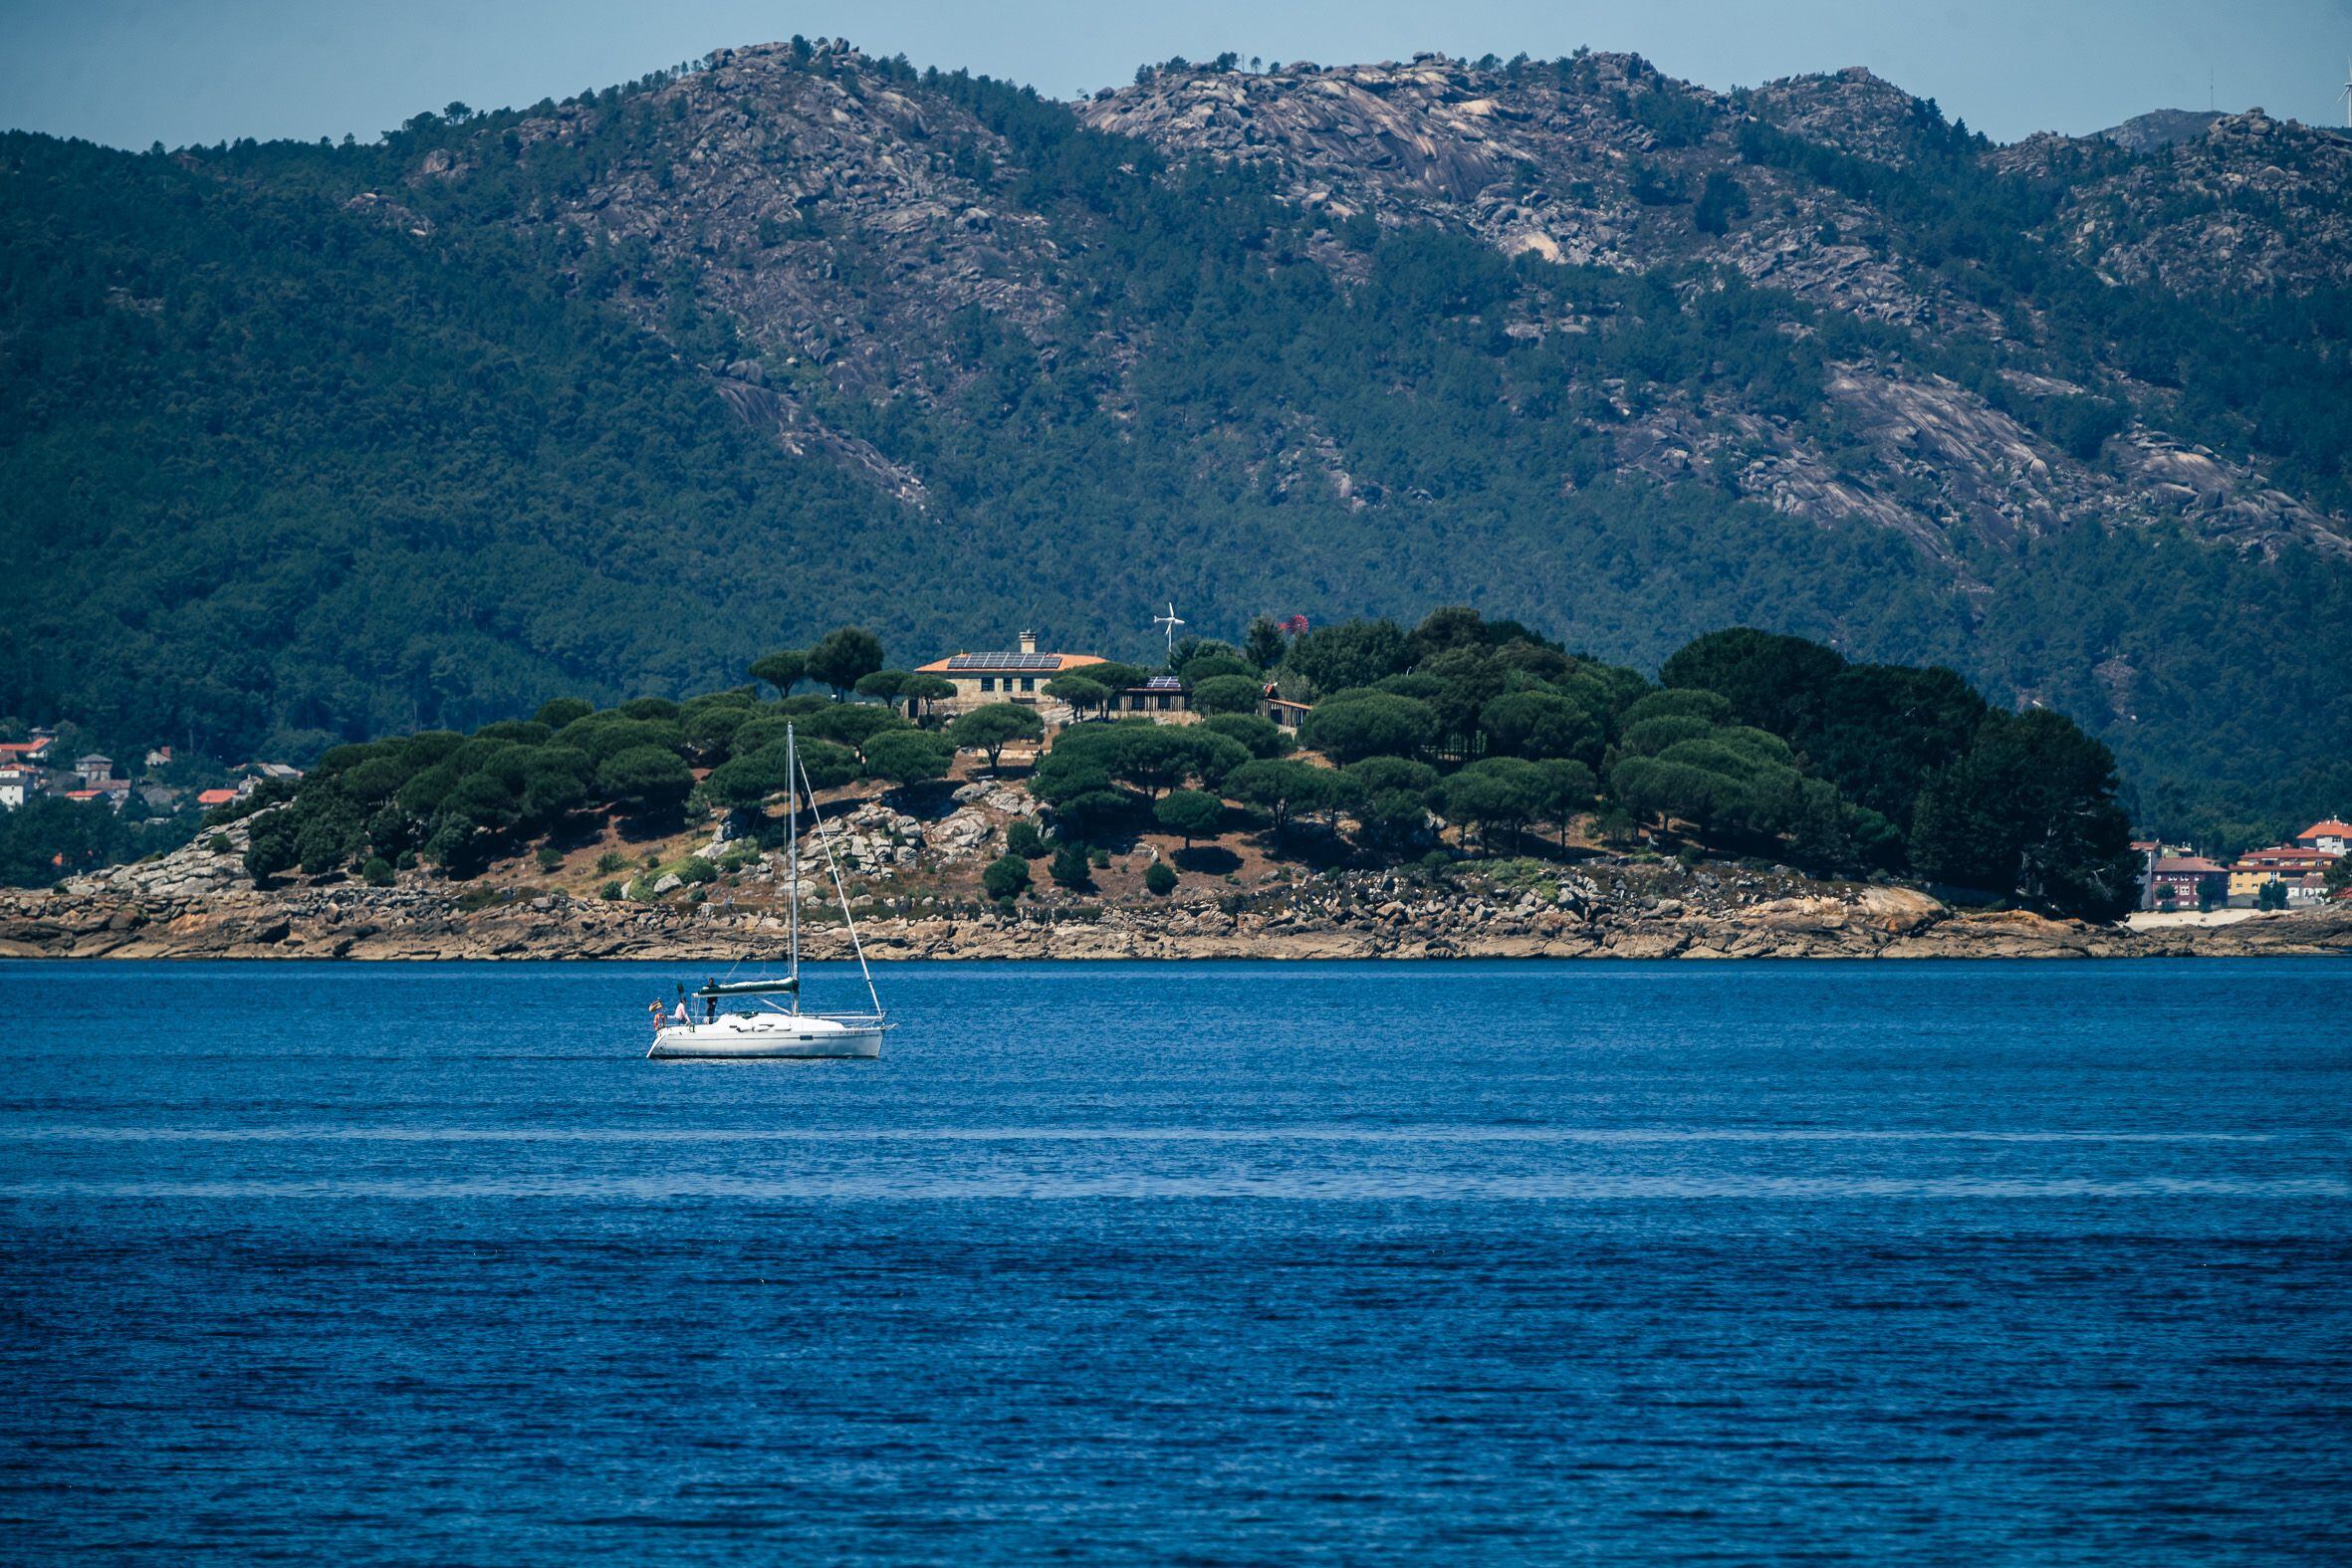 Isla de A Creba, propiedad privada en la ría de Muros y Noia, vista desde la localidad de Porto do Son esta semana.